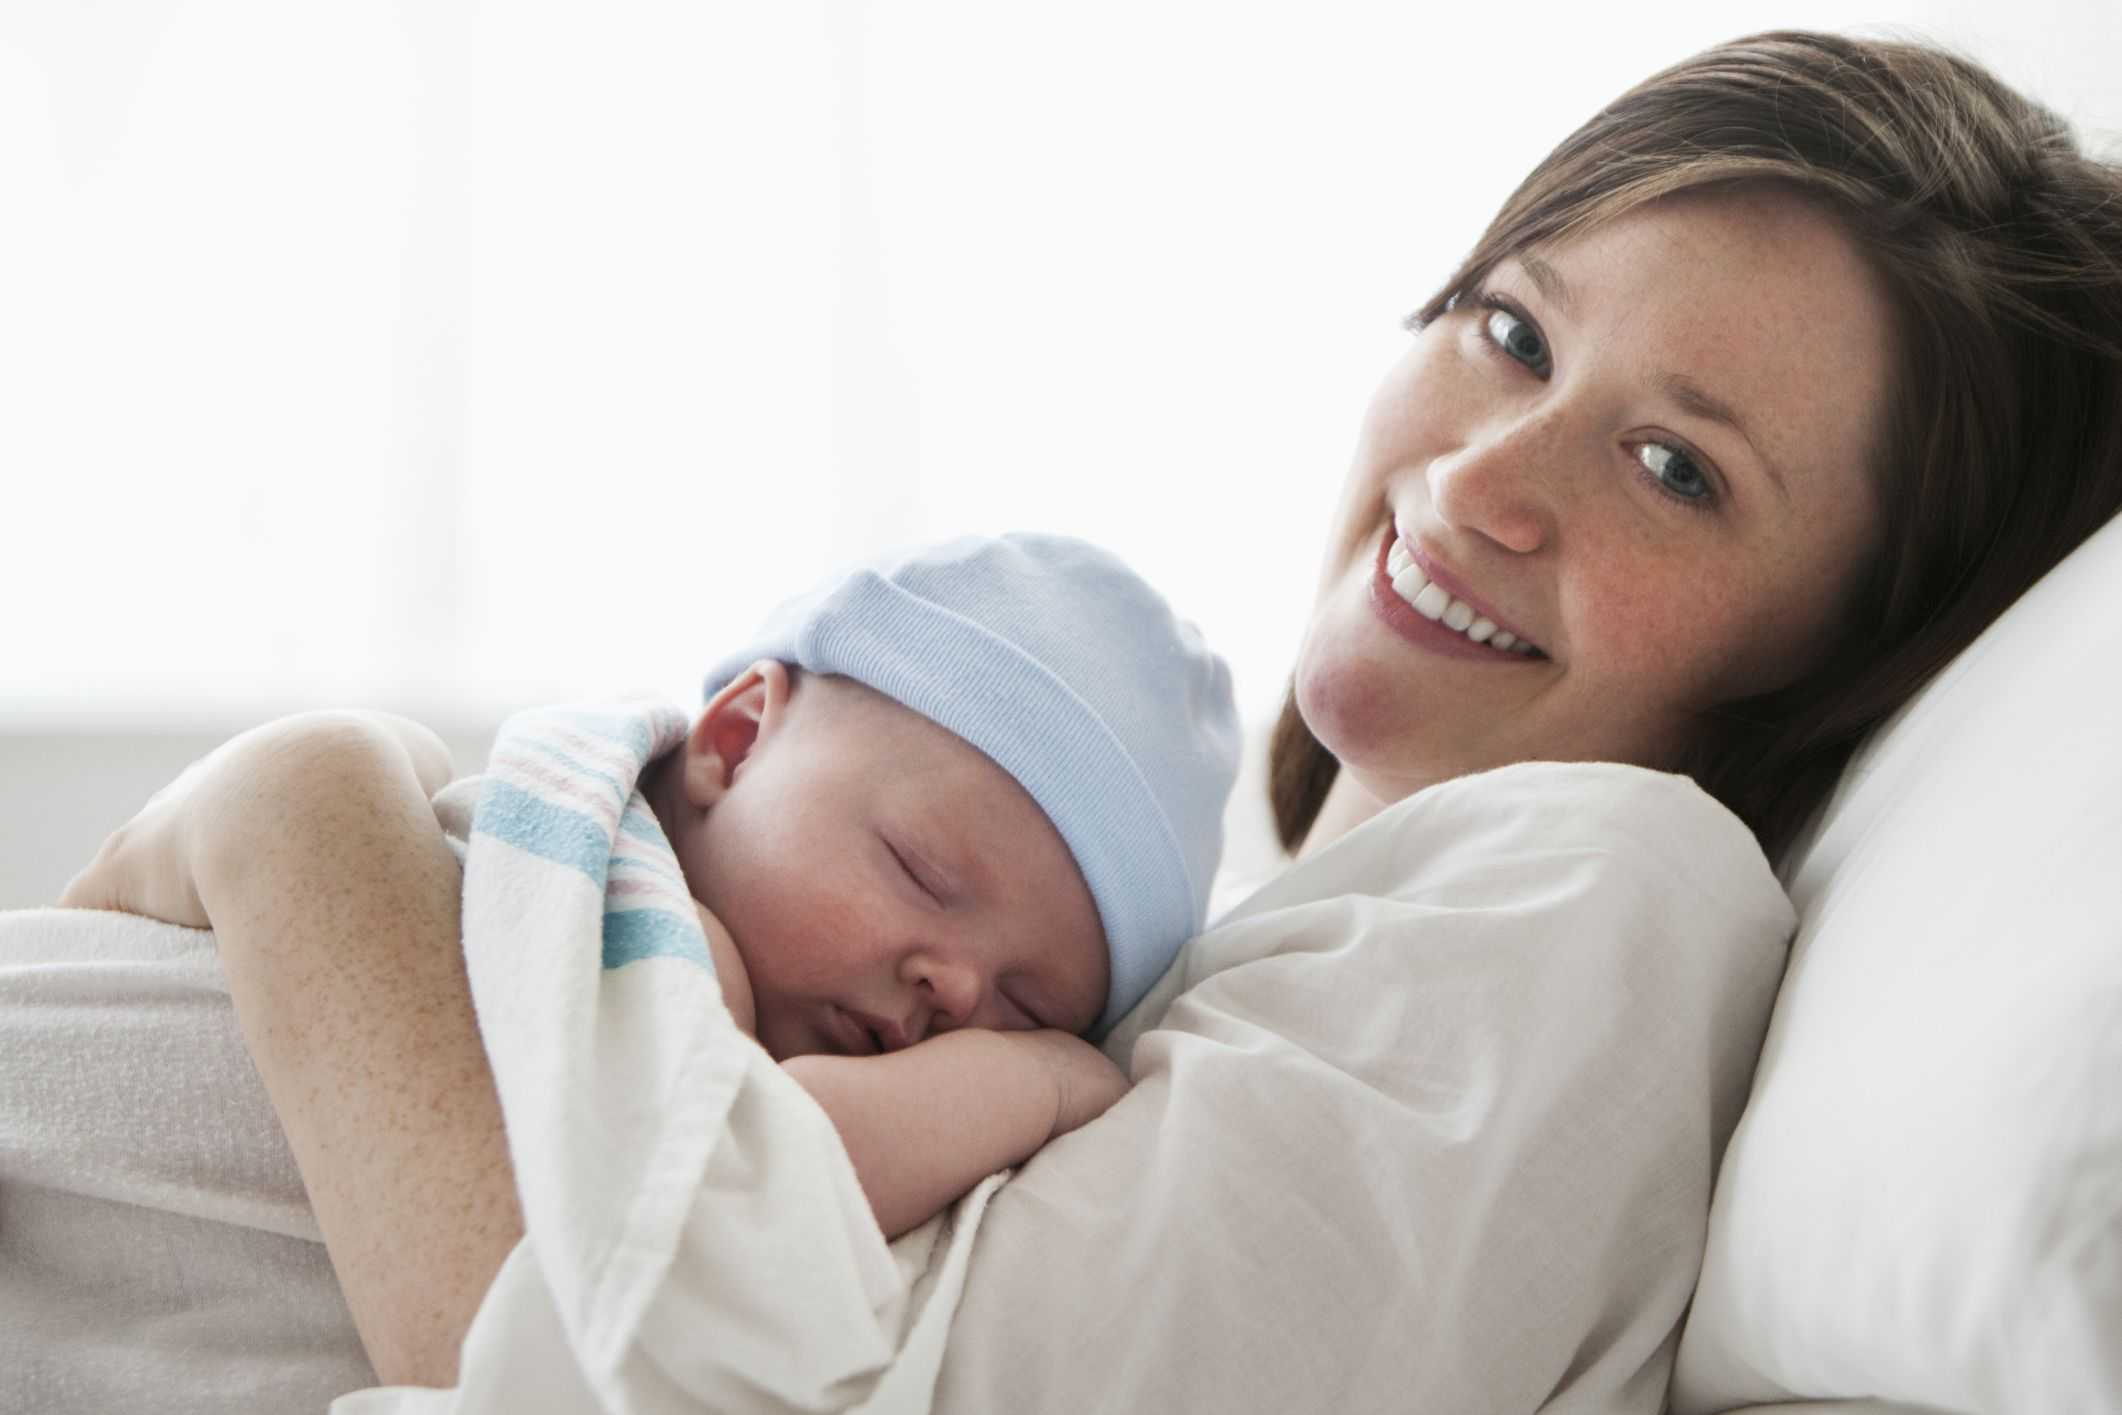 Первые дни с младенцем дома: 6 советов маме